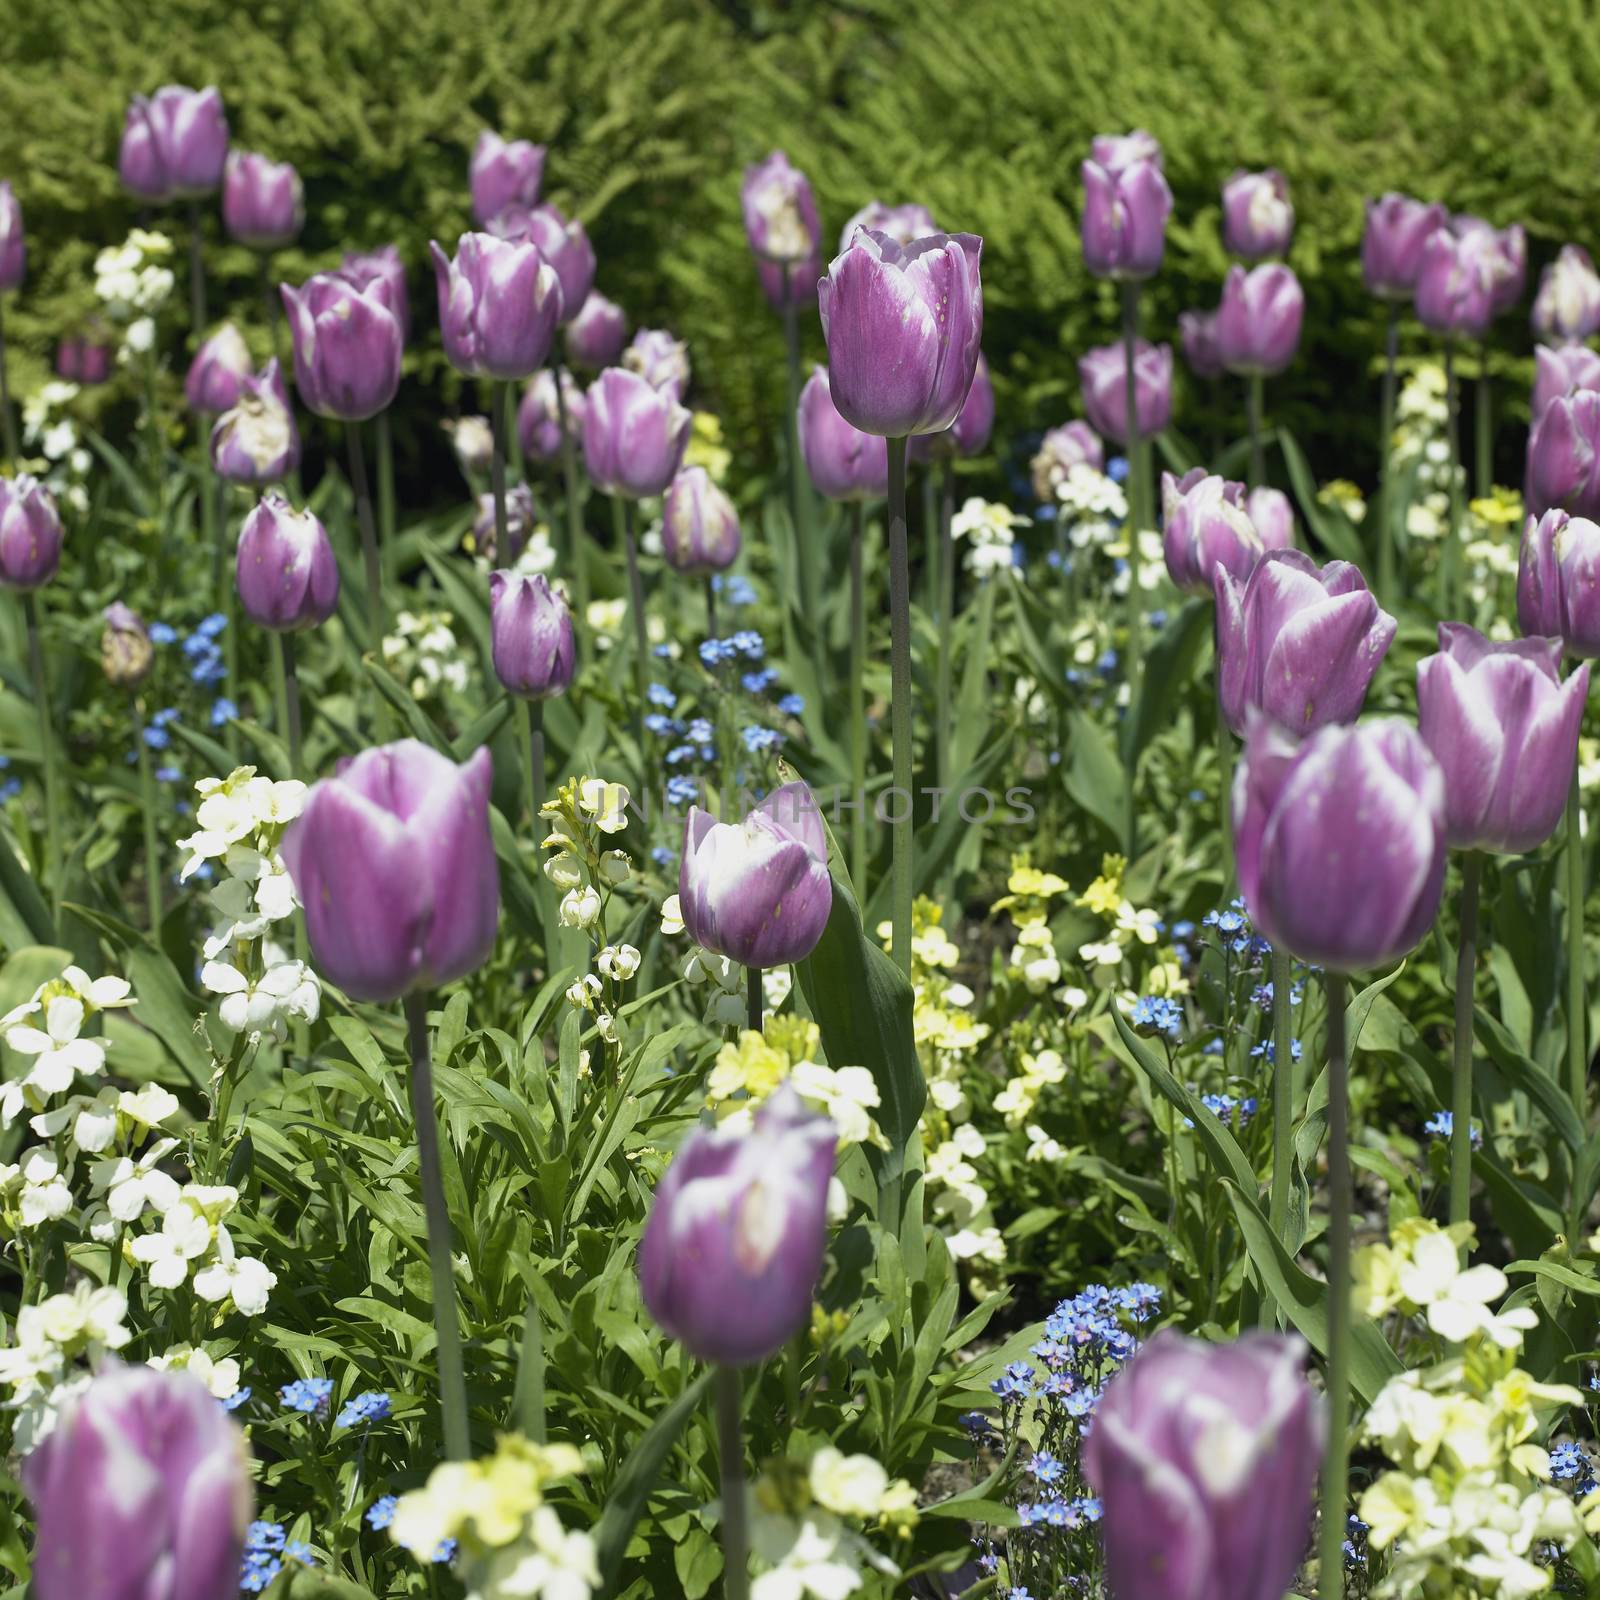 Purple tulips by mmm